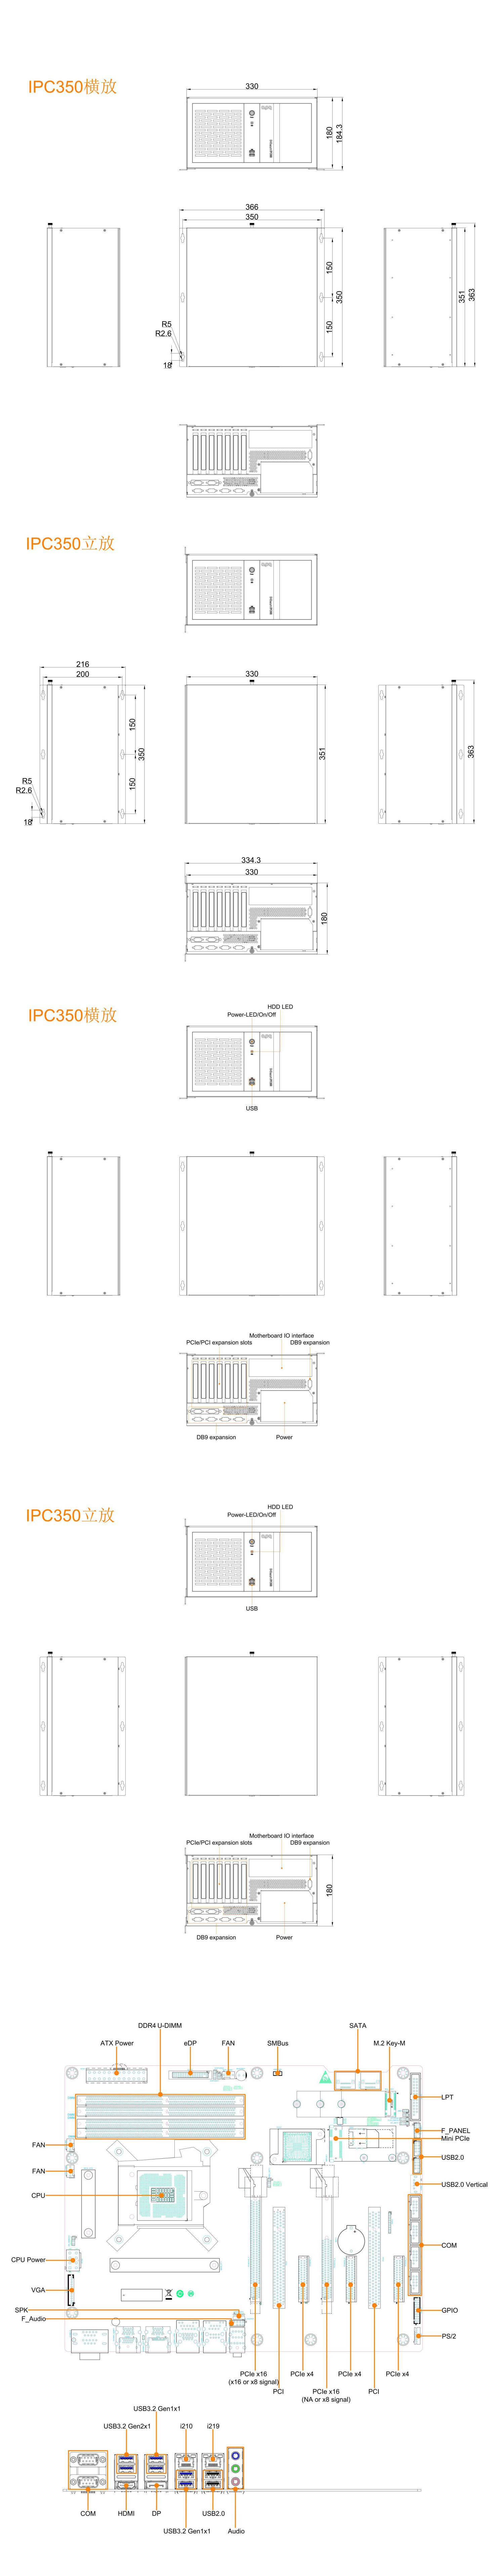 IPC350-Q470_SpecSheet_APQ